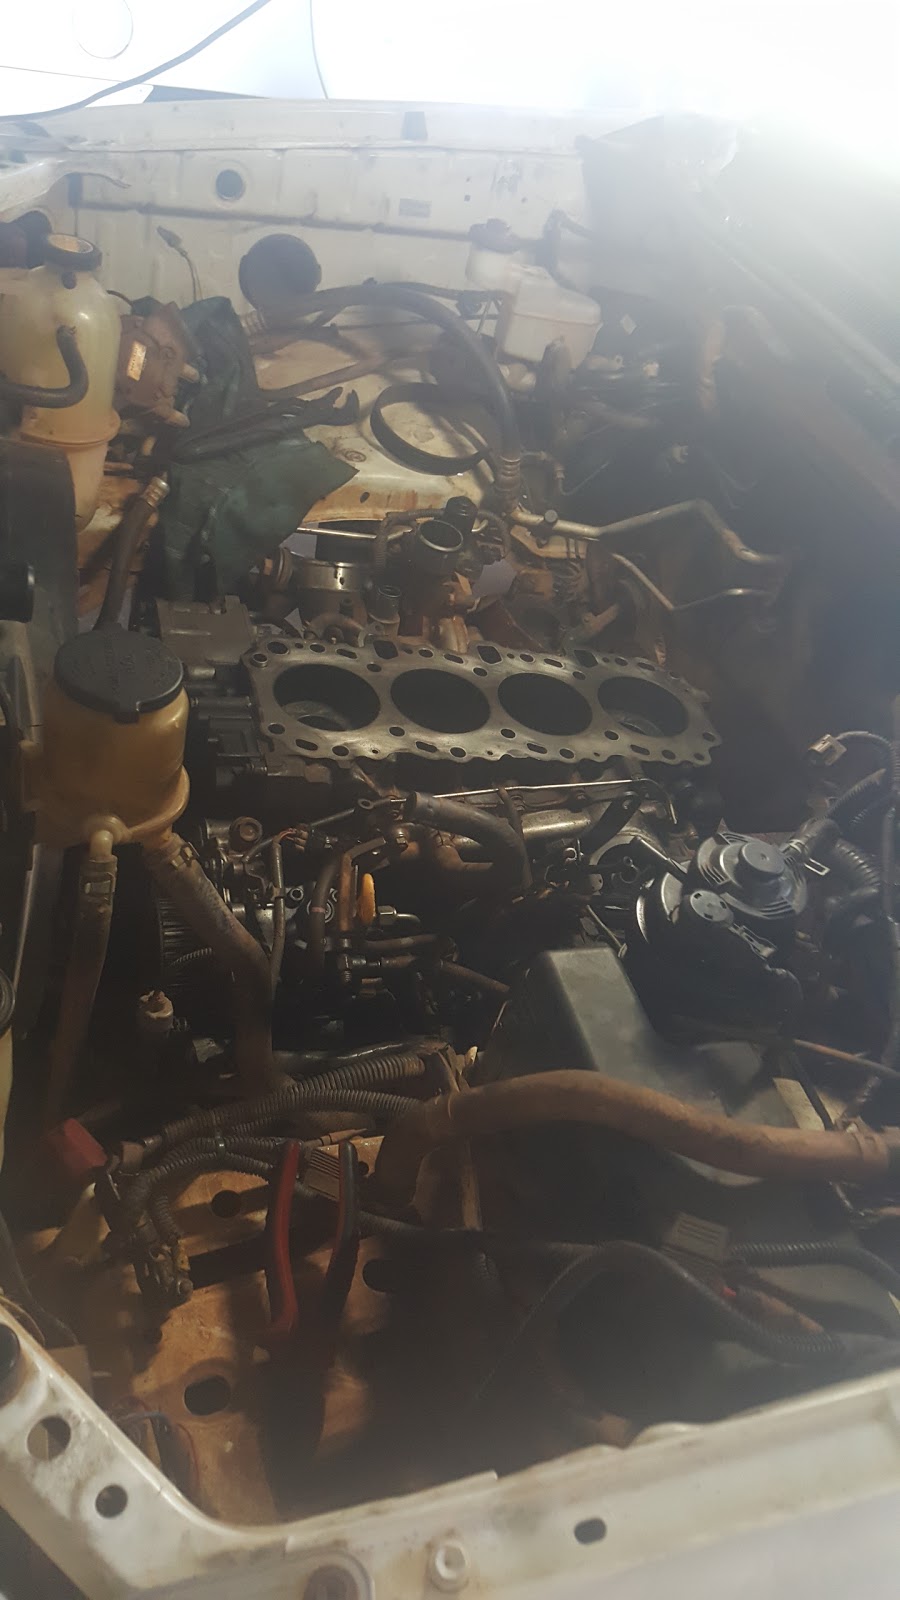 Arnhem Motors | car repair | 78 Pruen Rd, Berrimah NT 0828, Australia | 0889843441 OR +61 8 8984 3441